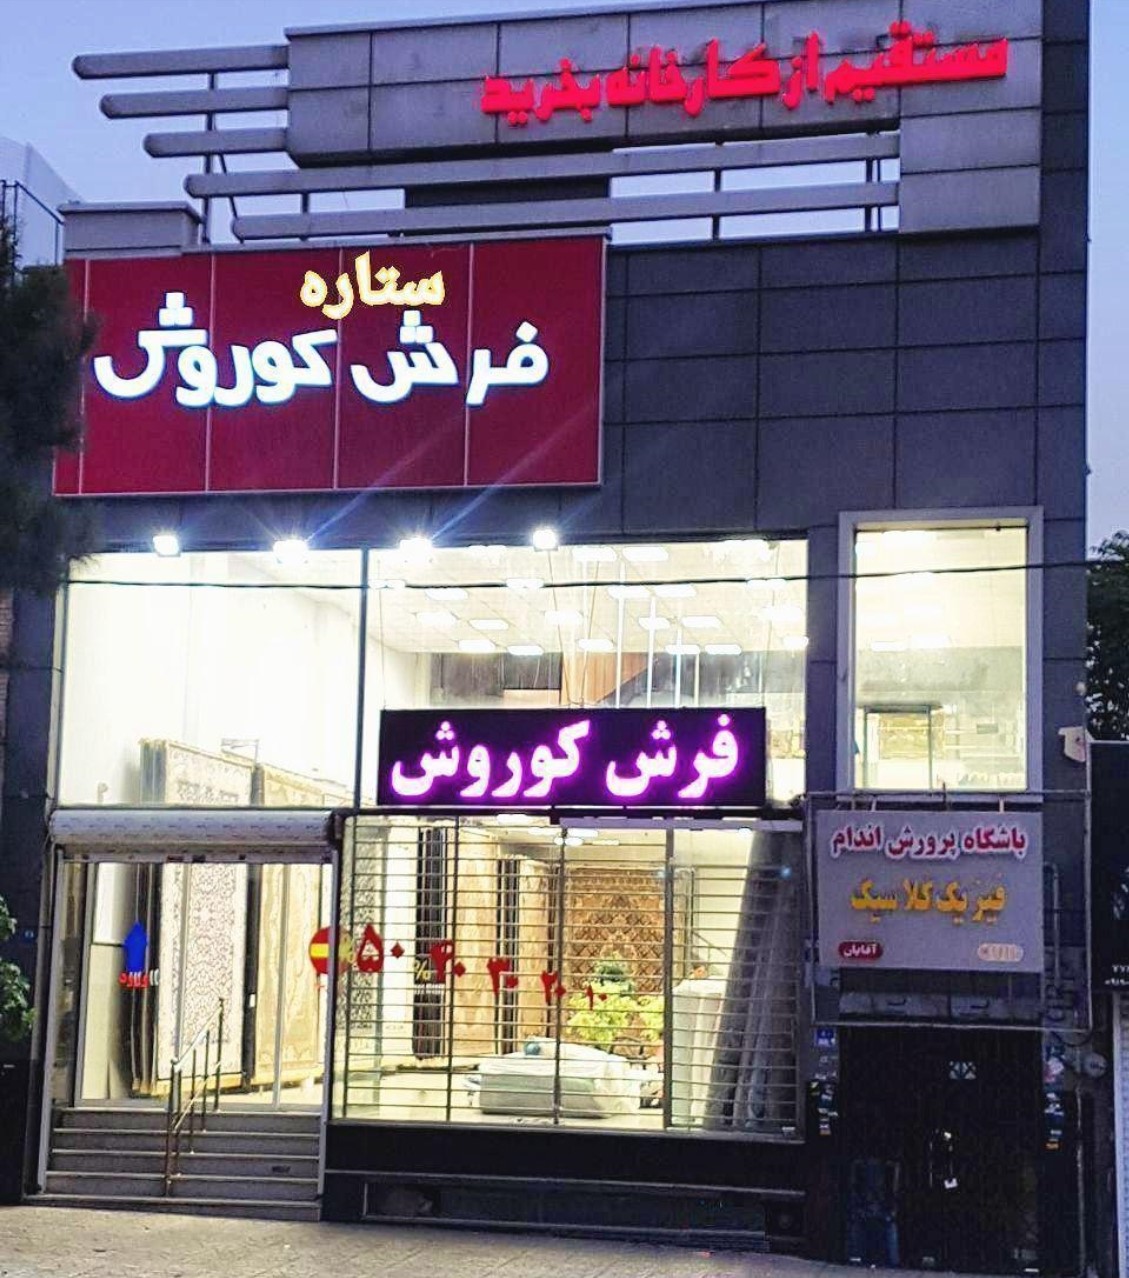 فرش باکیفیت کاشان را به قیمت کارخانه در تهران خرید کنید